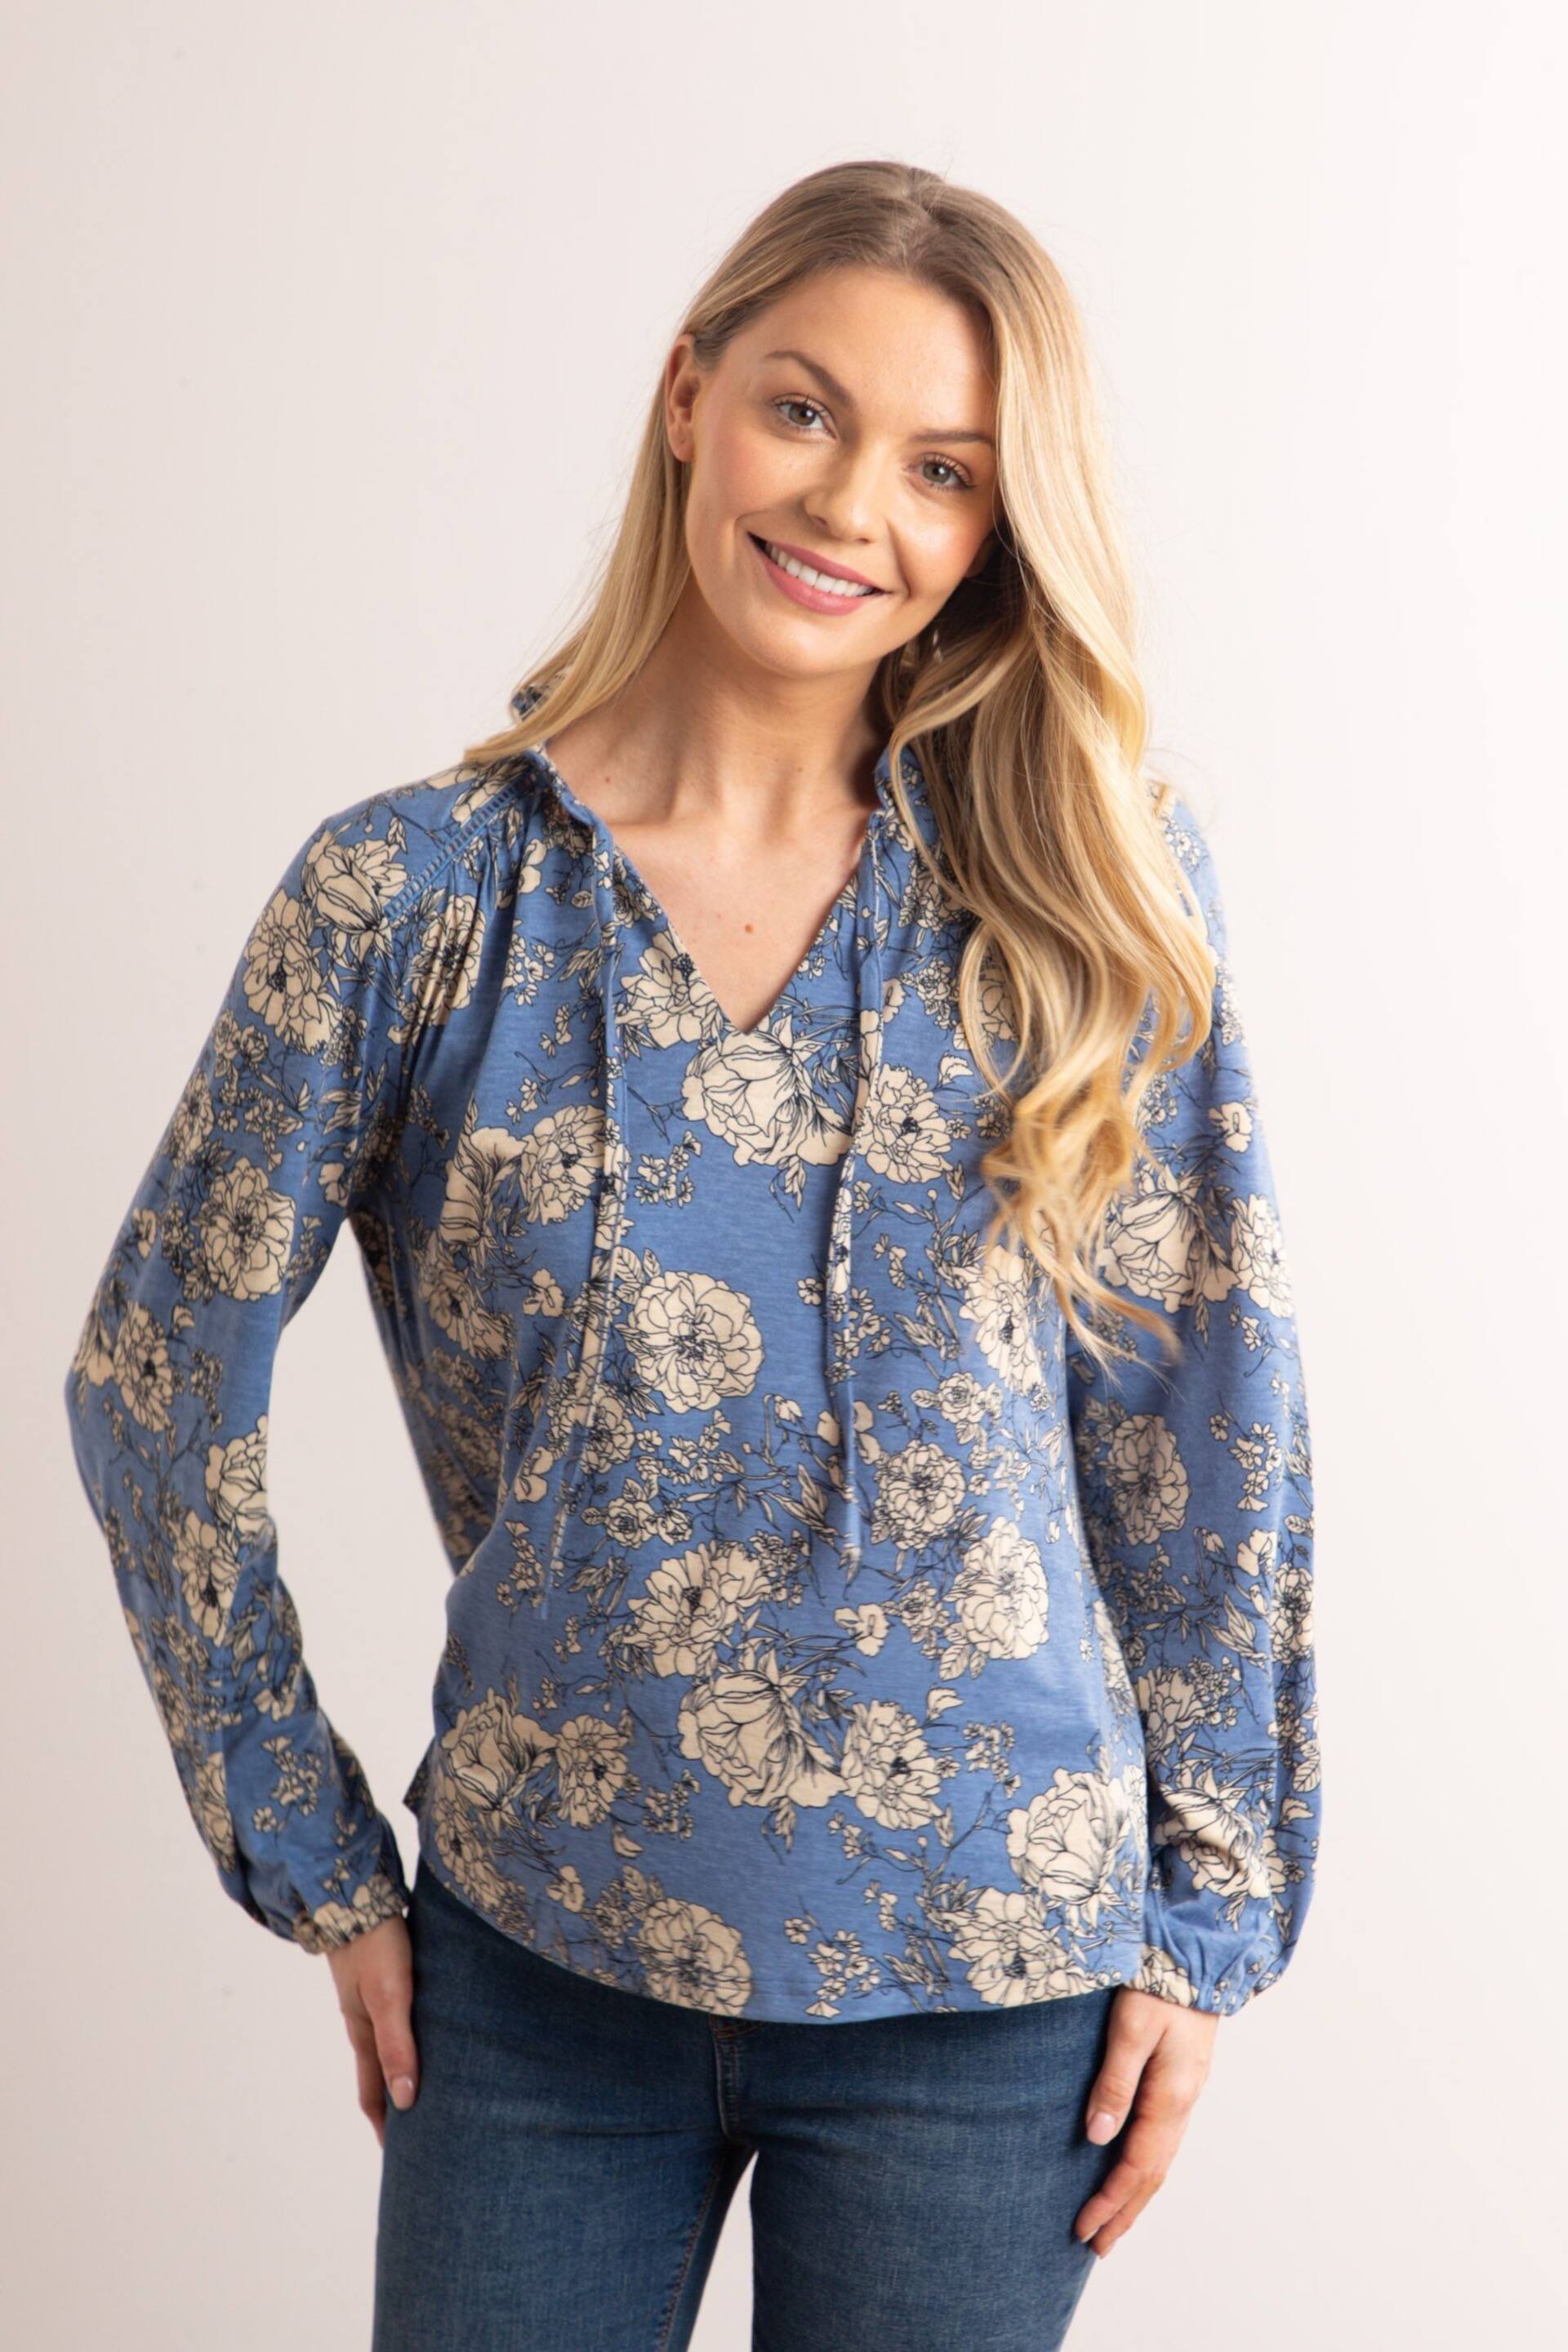 Lakeland Clothing Blue Mia Jersey Blouse - Image 1 of 5